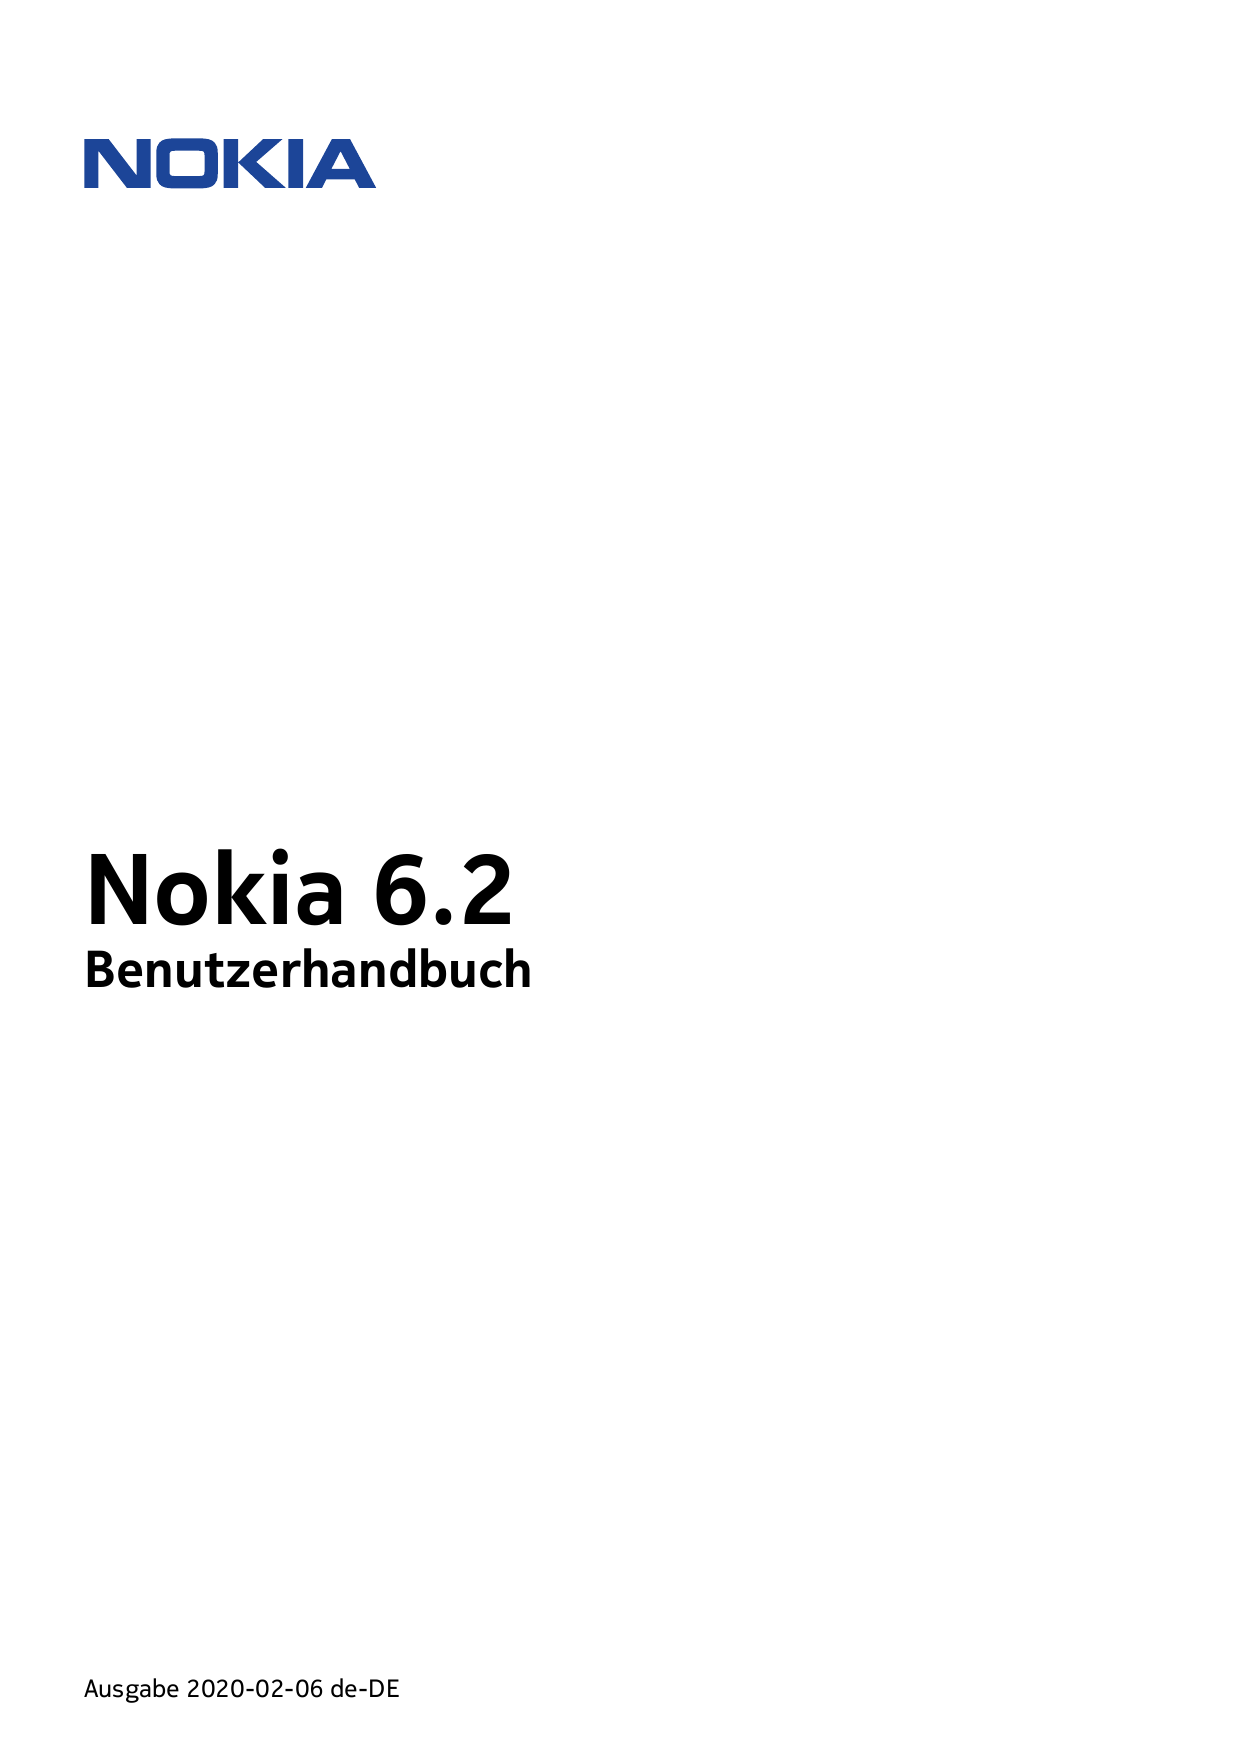 Nokia 6.2BenutzerhandbuchAusgabe 2020-02-06 de-DE